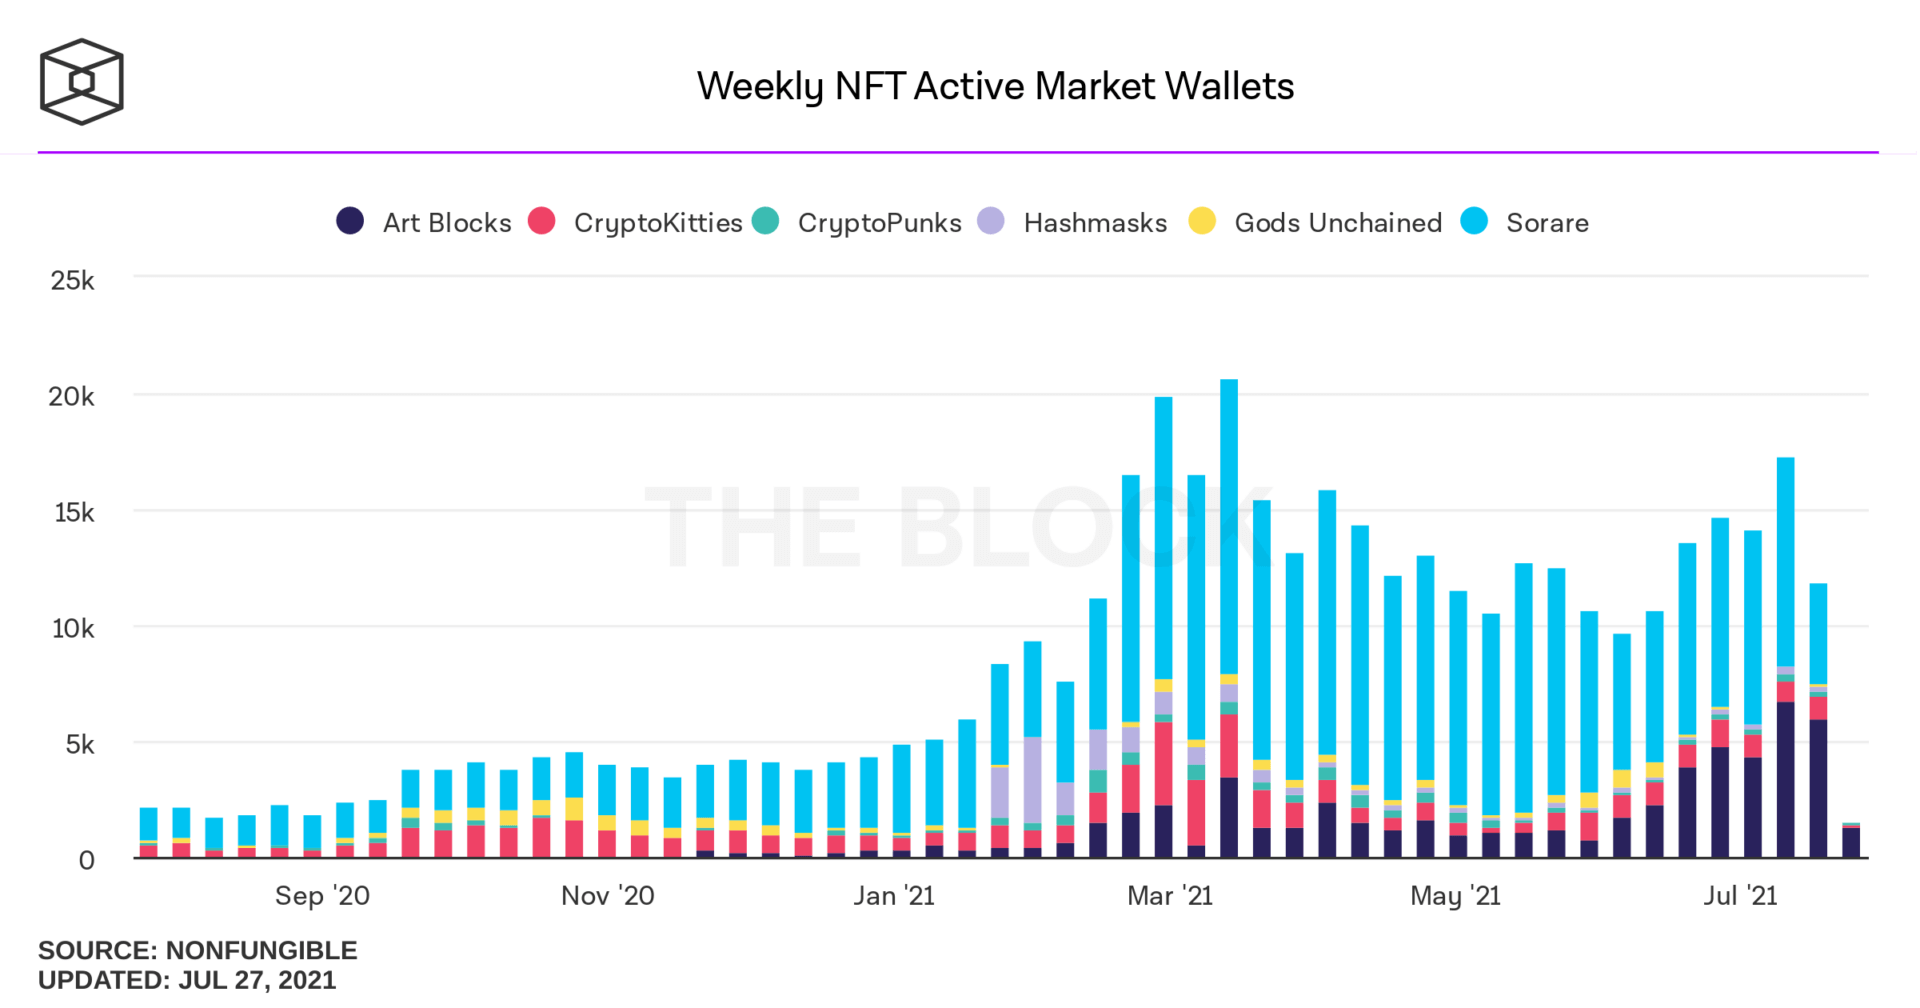 Die Anzahl der aktiven Portfolios in den NFT-Märkten pro Woche zeigt eine starke Dominanz von Sorare, das mehr als die Hälfte der Portfolios ausmacht. 